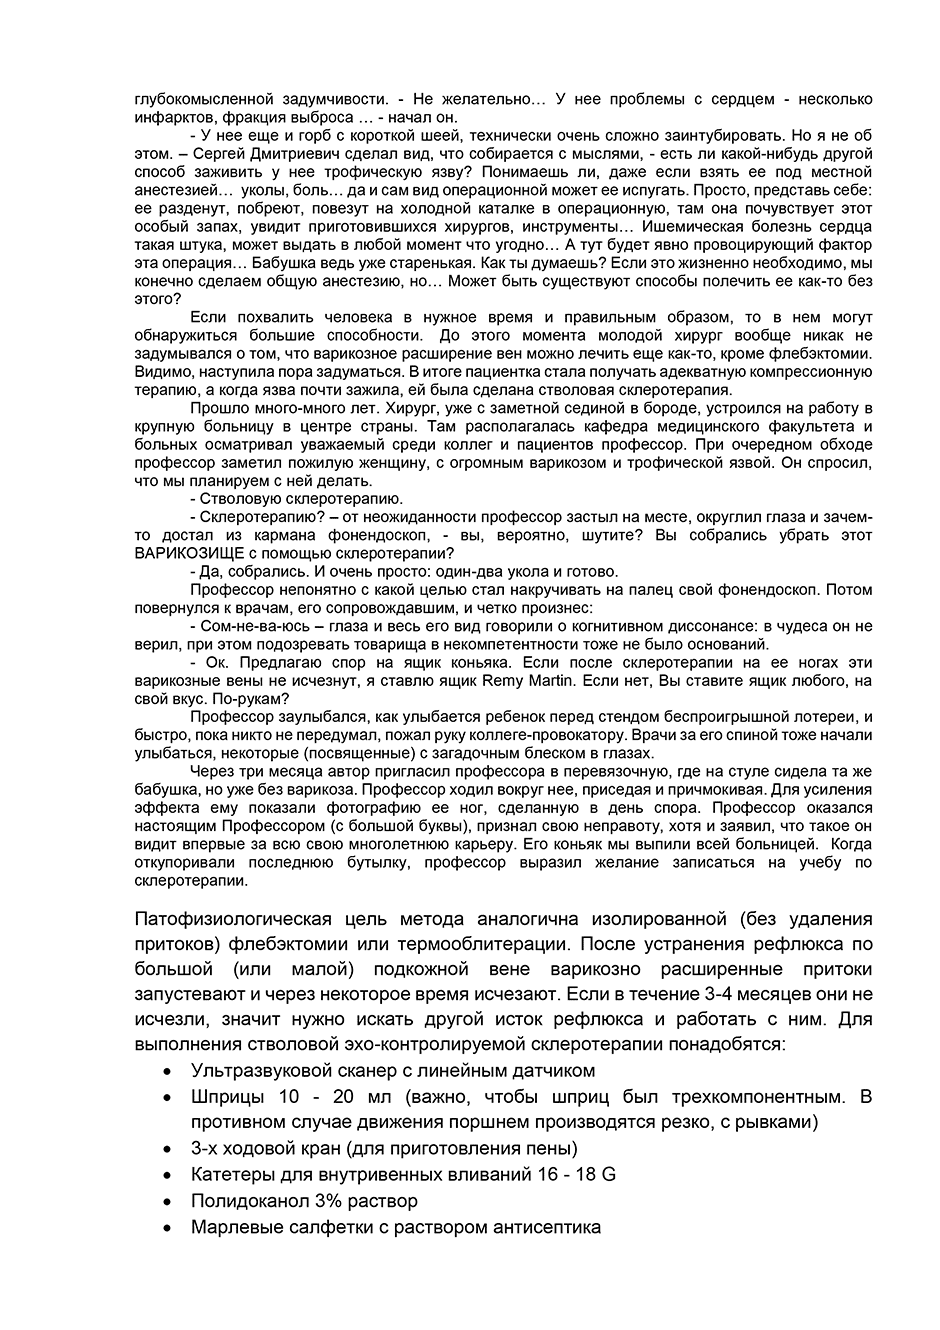 Пример страницы из книги  "Склеротерапия вен" - Мазайшвили К. В., Акимов С. С.